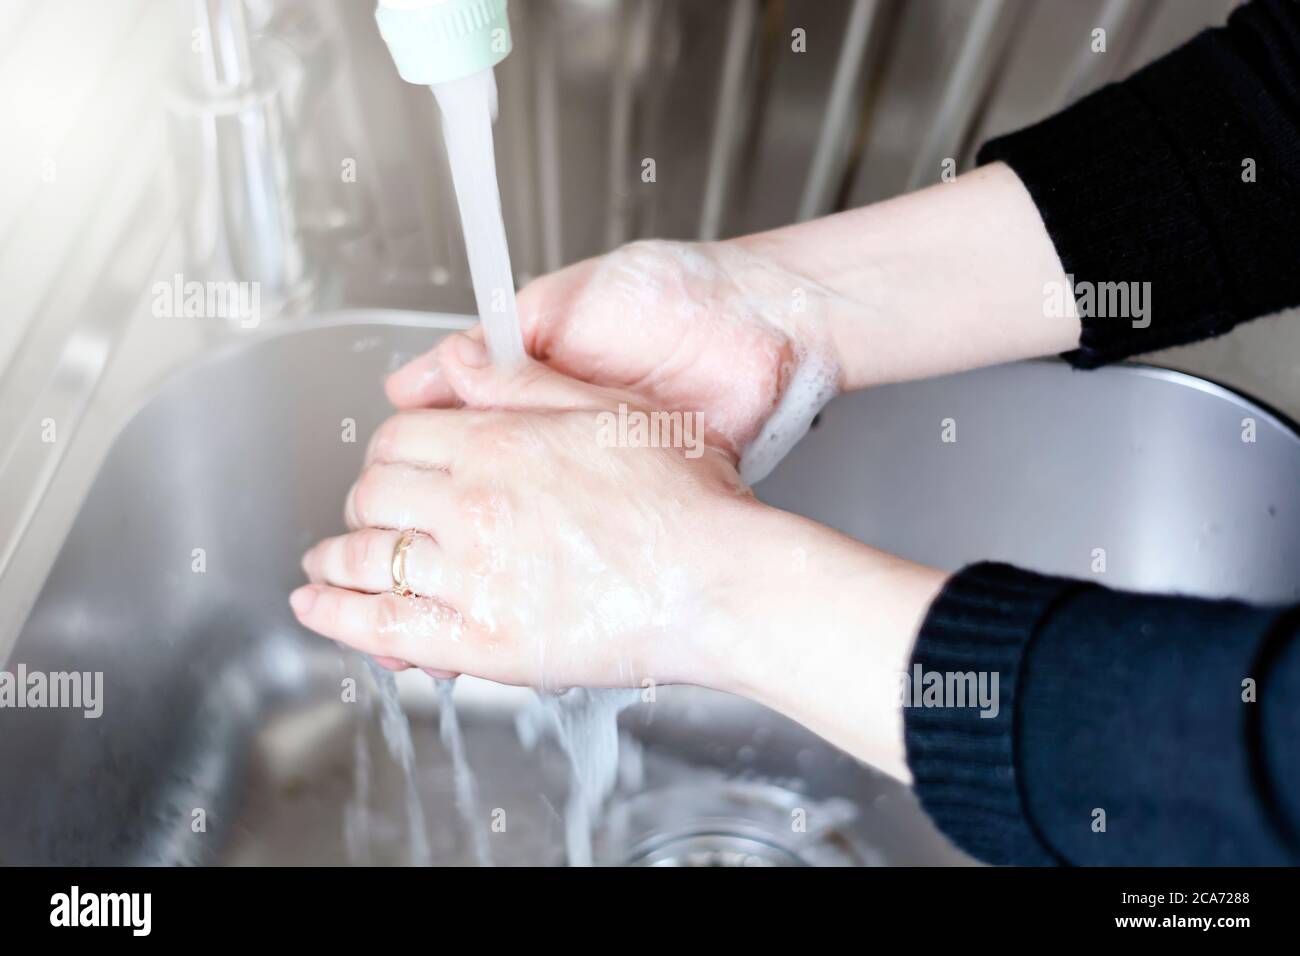 Eine junge kaukasische Frau spült ihre Hände nach dem Waschen mit Seife. Persönliche Hygiene und Virenprävention. Stockfoto